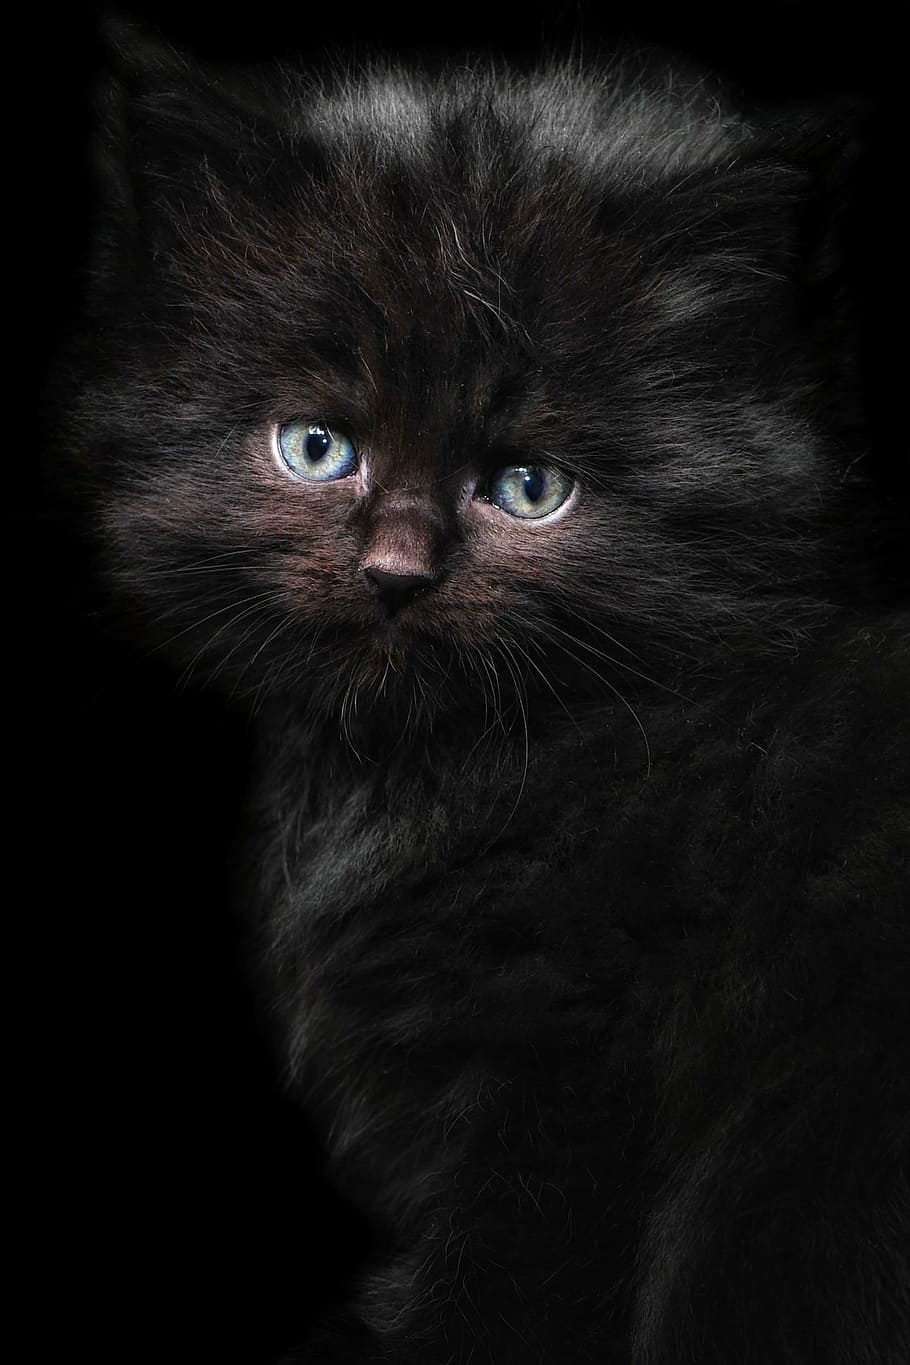 長い毛皮, 黒, 子猫の写真, 猫, 子猫, メインクーン, 猫の肖像, 猫の赤ちゃん, 黒い猫, 若い猫